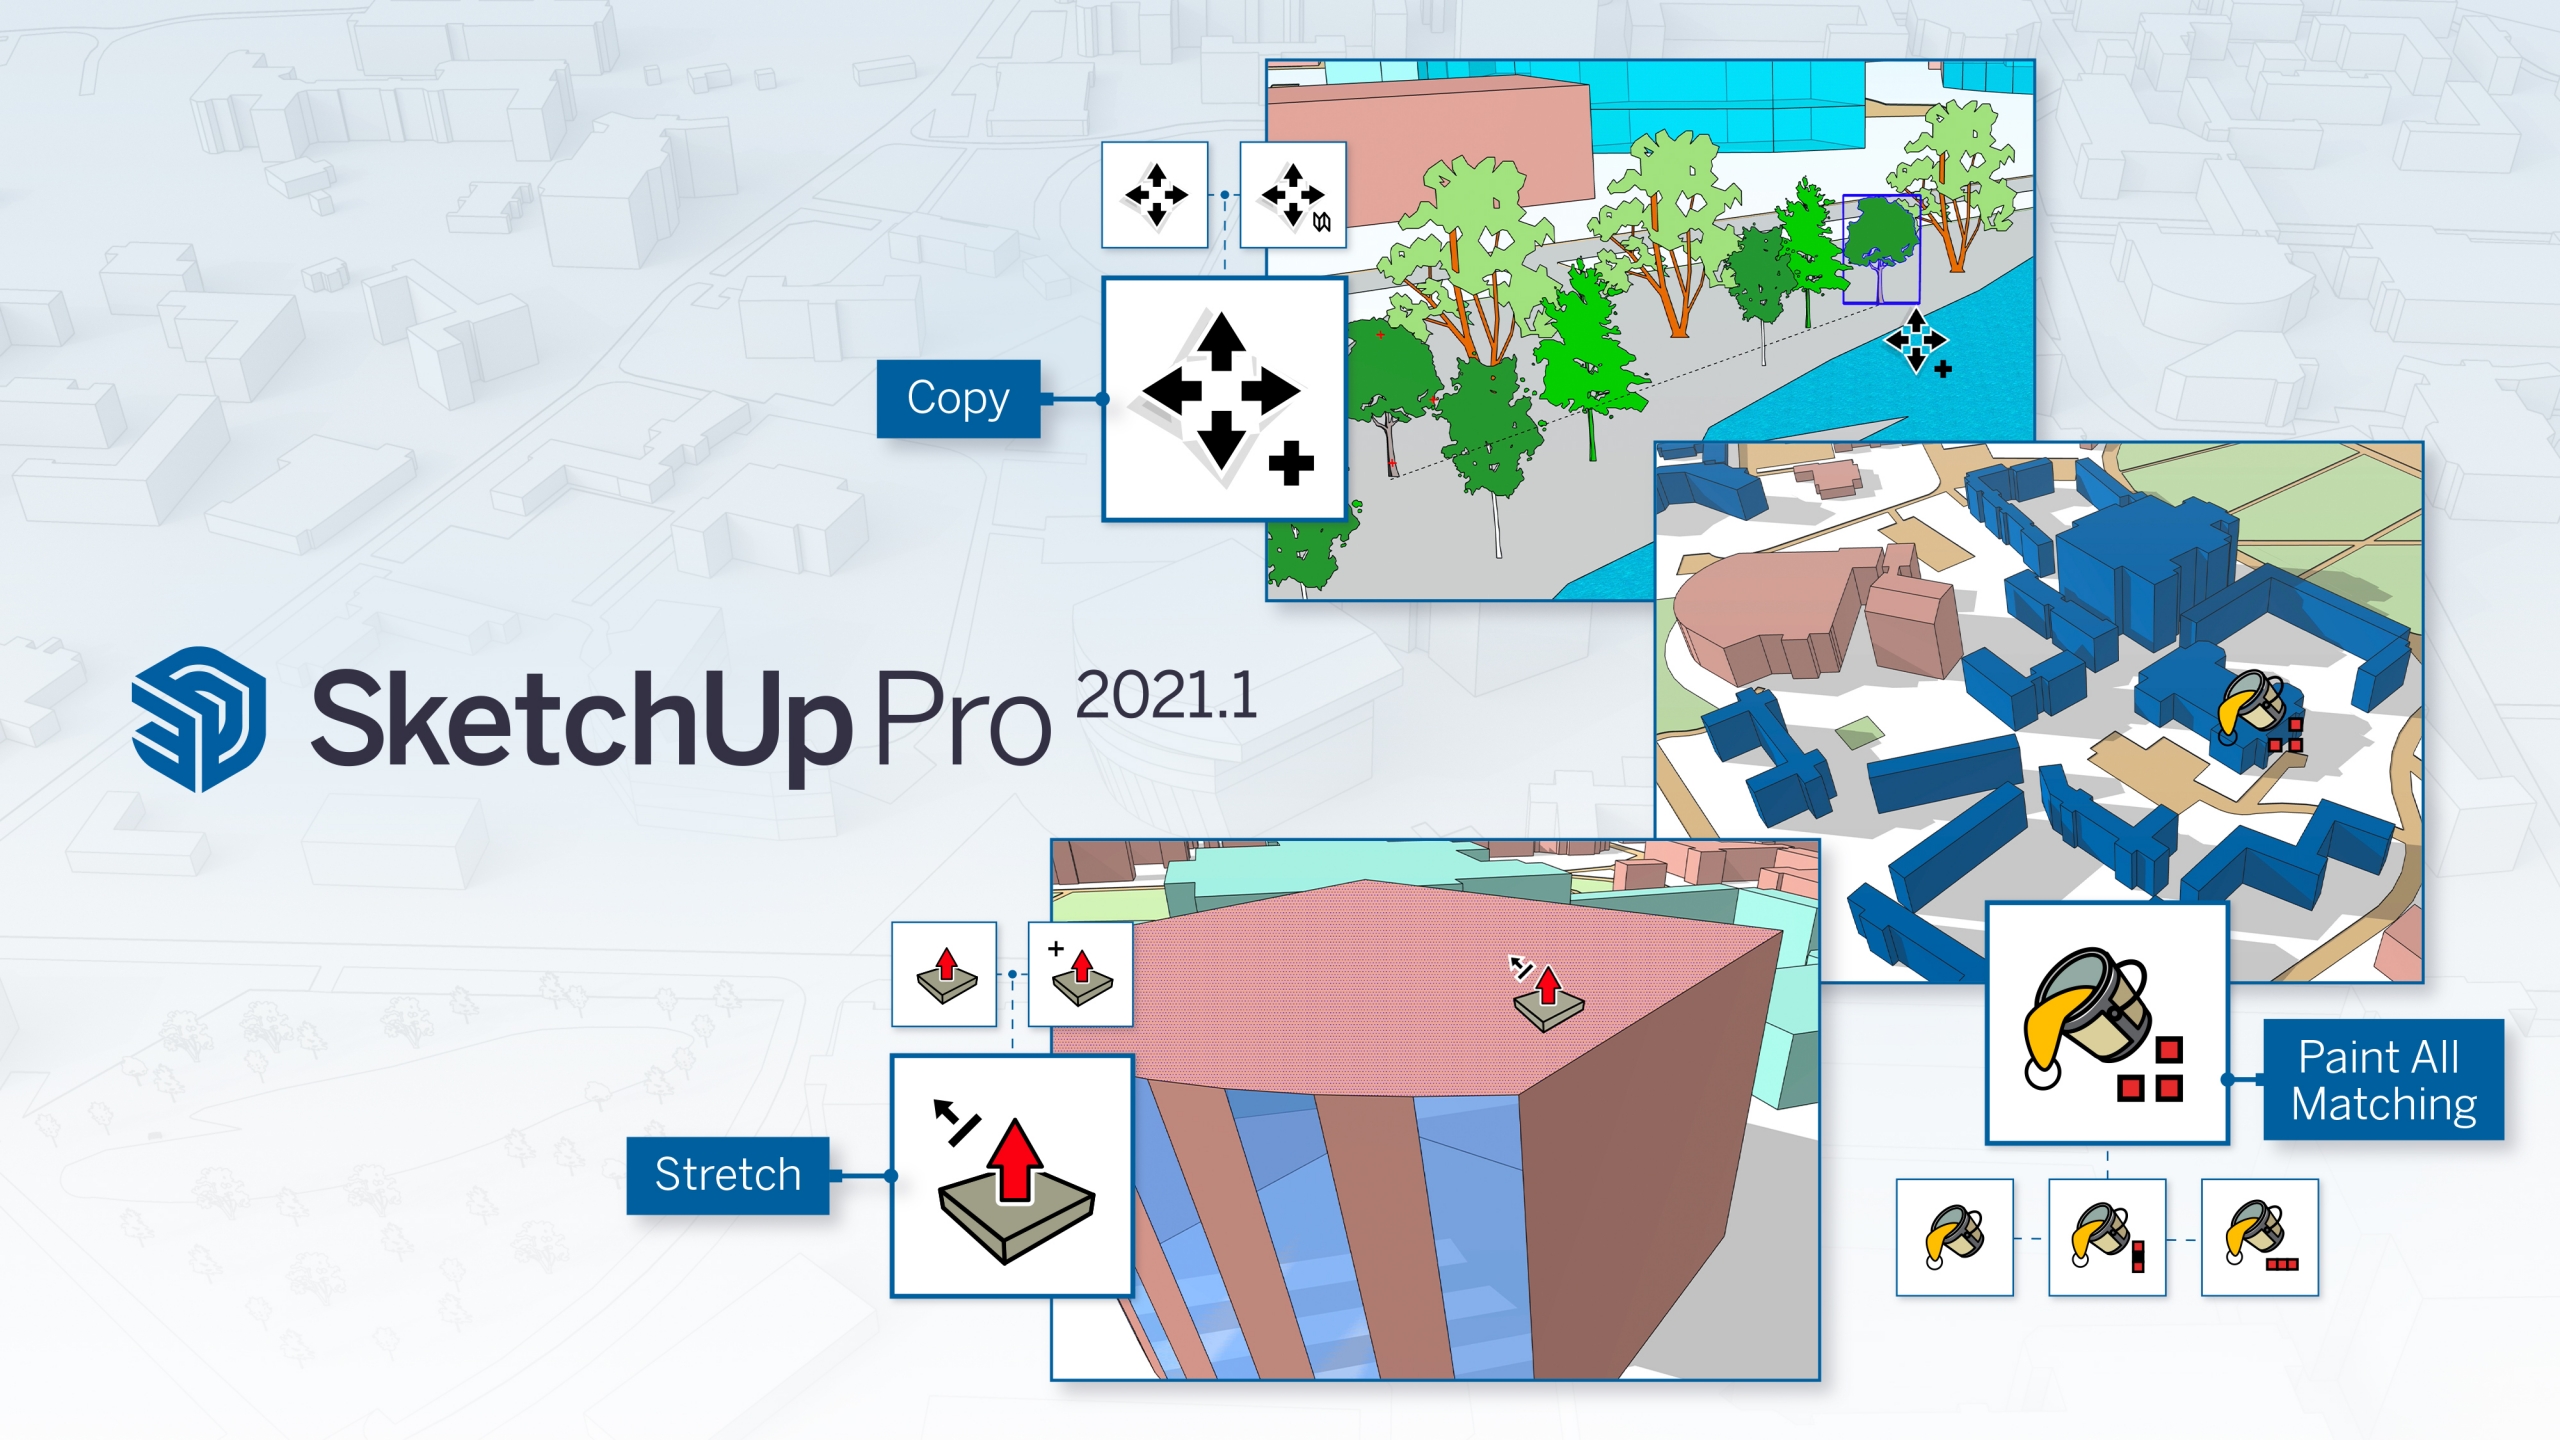 sketchUp Pro 2021.1